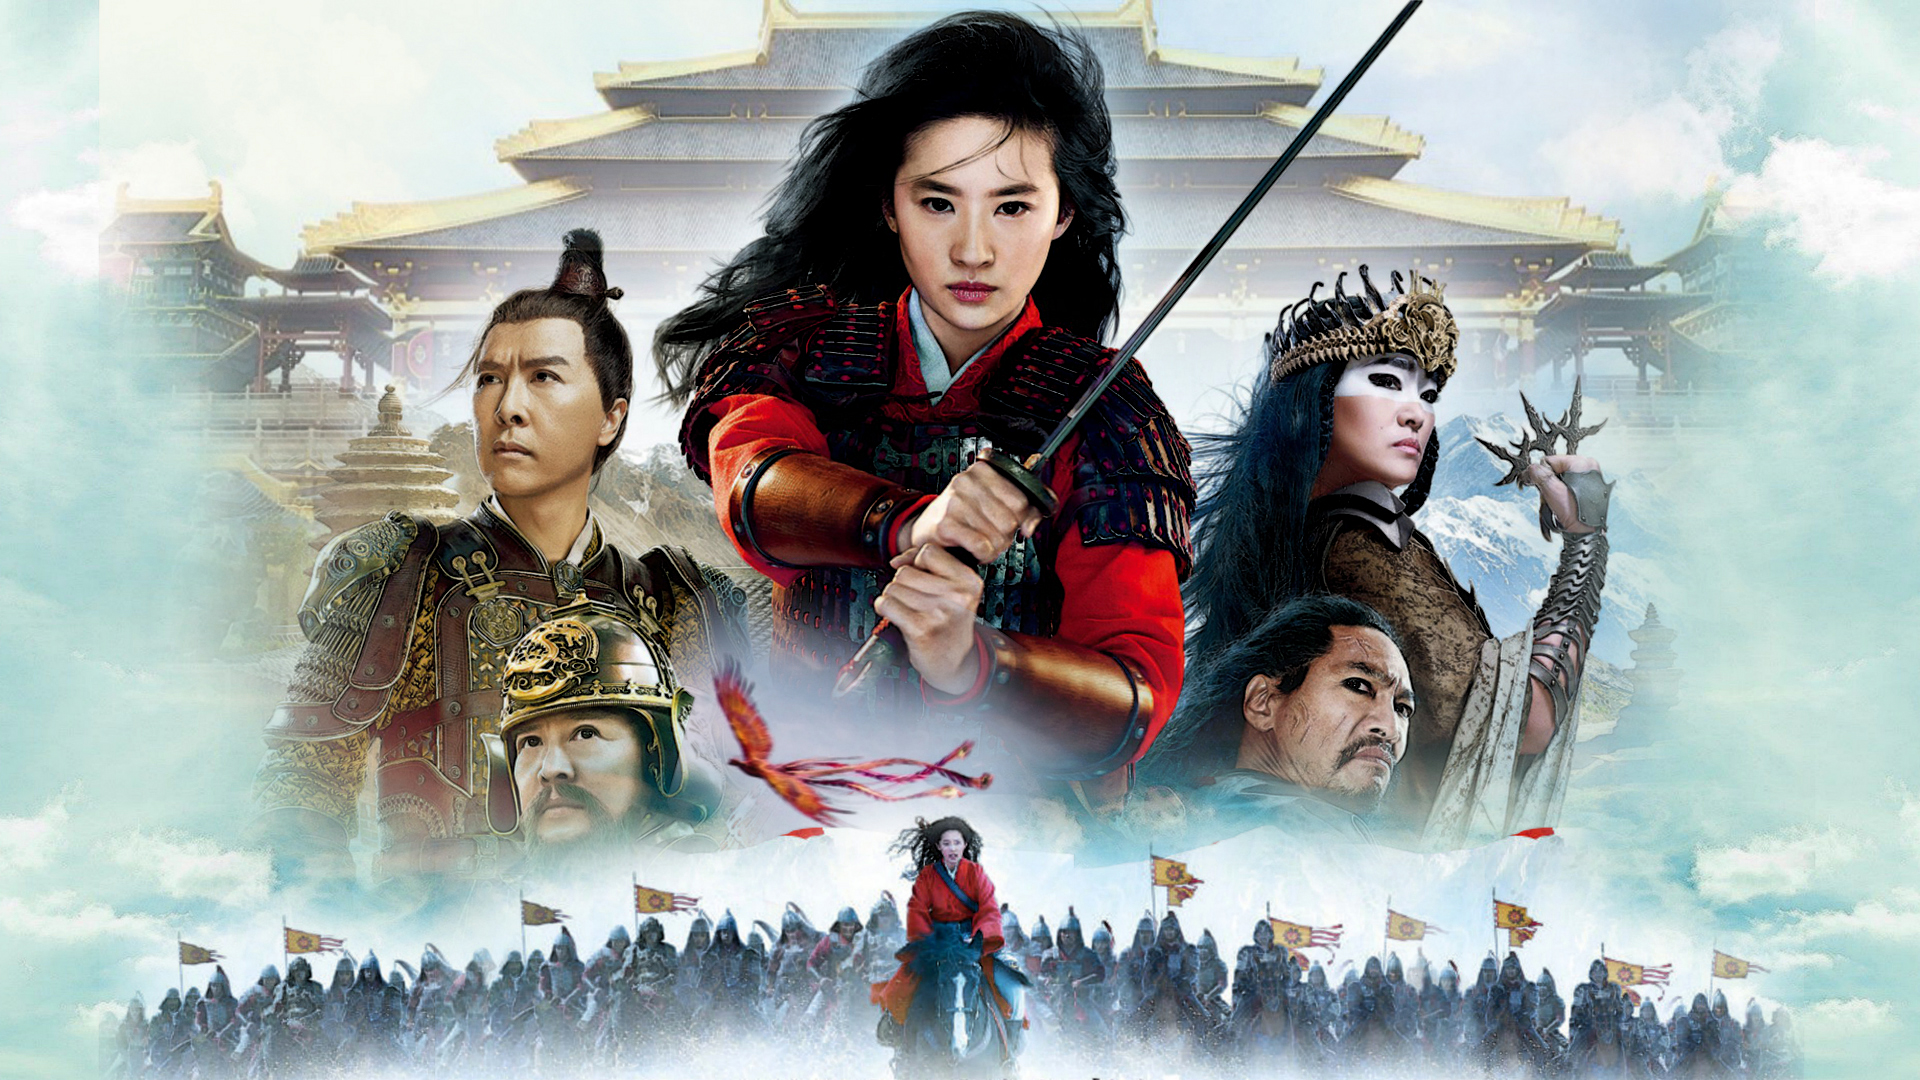 Mulan 2020 Movie Wallpapers